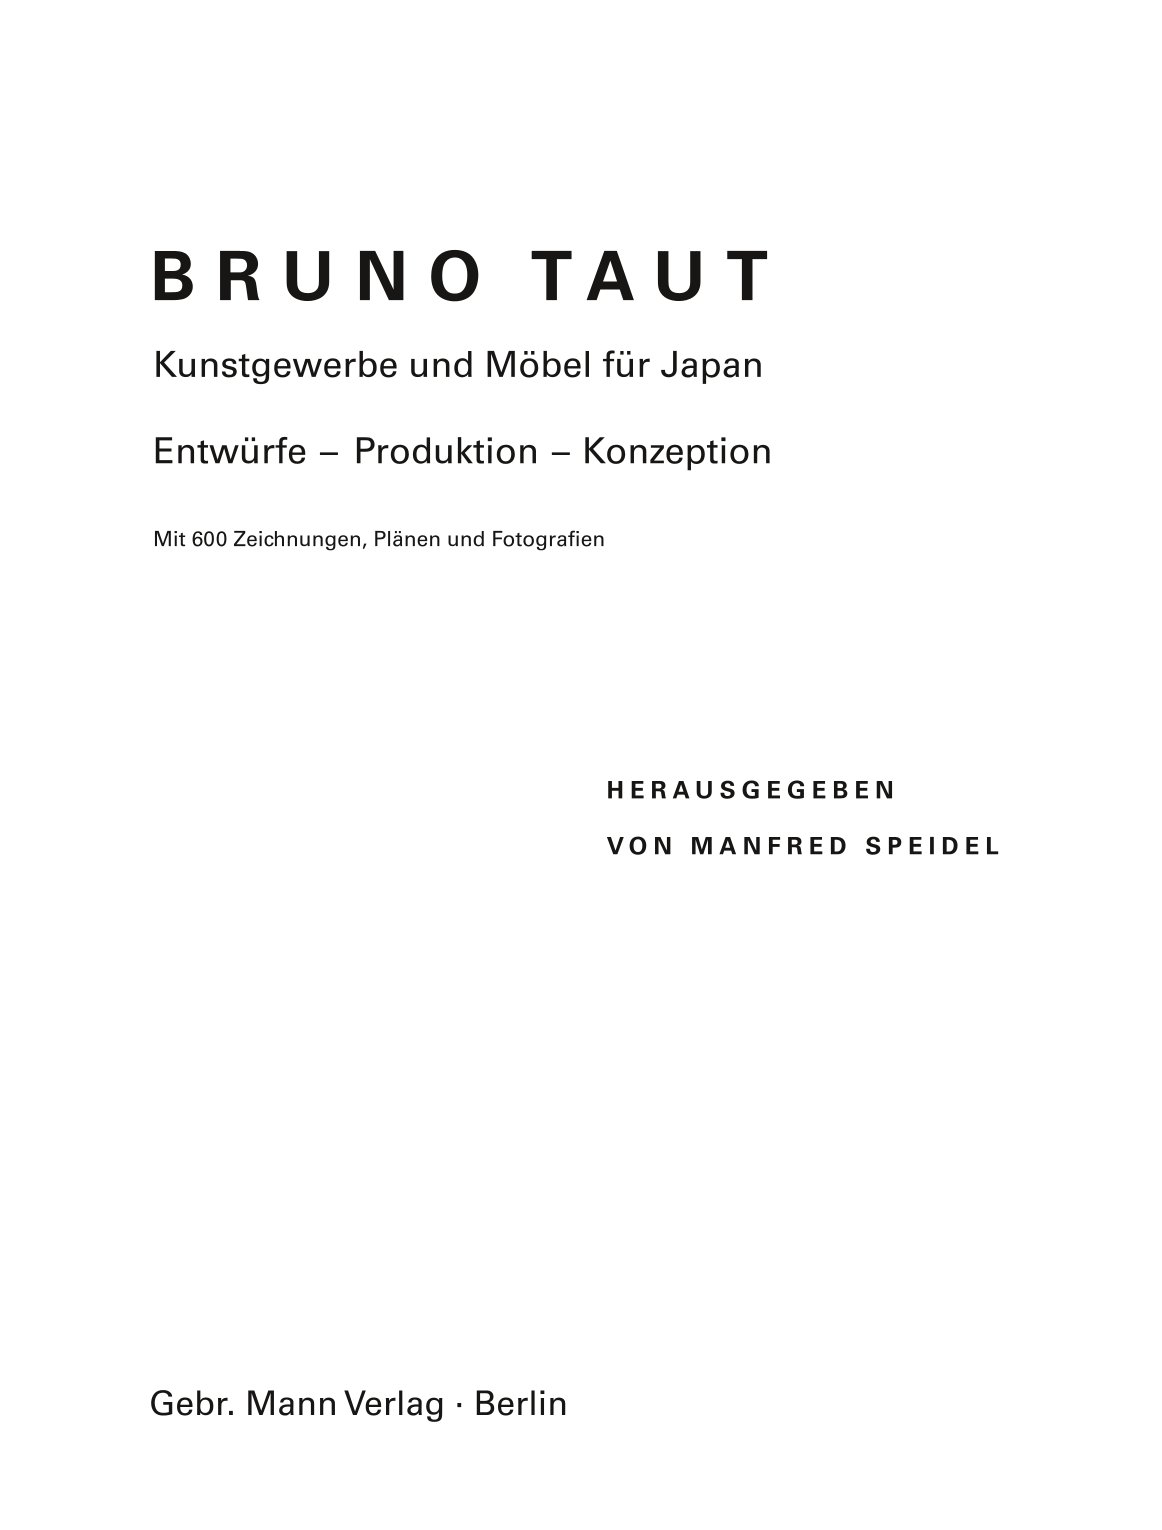 Bruno Taut. Kunstgewerbe und Möbel für Japan 